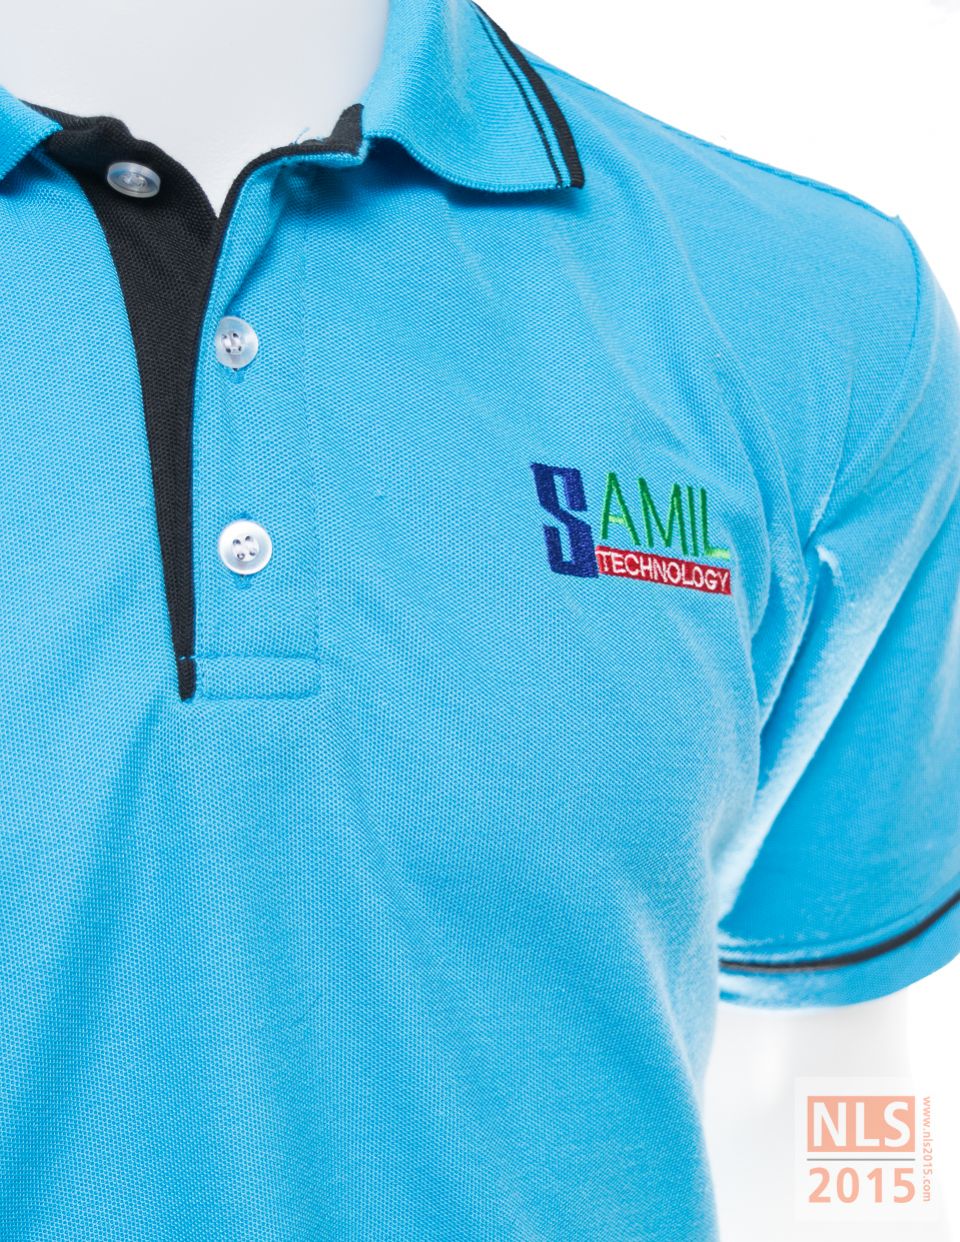 แบบเสื้อโปโล SAMIL technology / นลินสิริ แหลมฉบัง รับตัดชุดฟอร์มพนักงาน เสื้อโปโล ปักโลโก้รูปที่ 